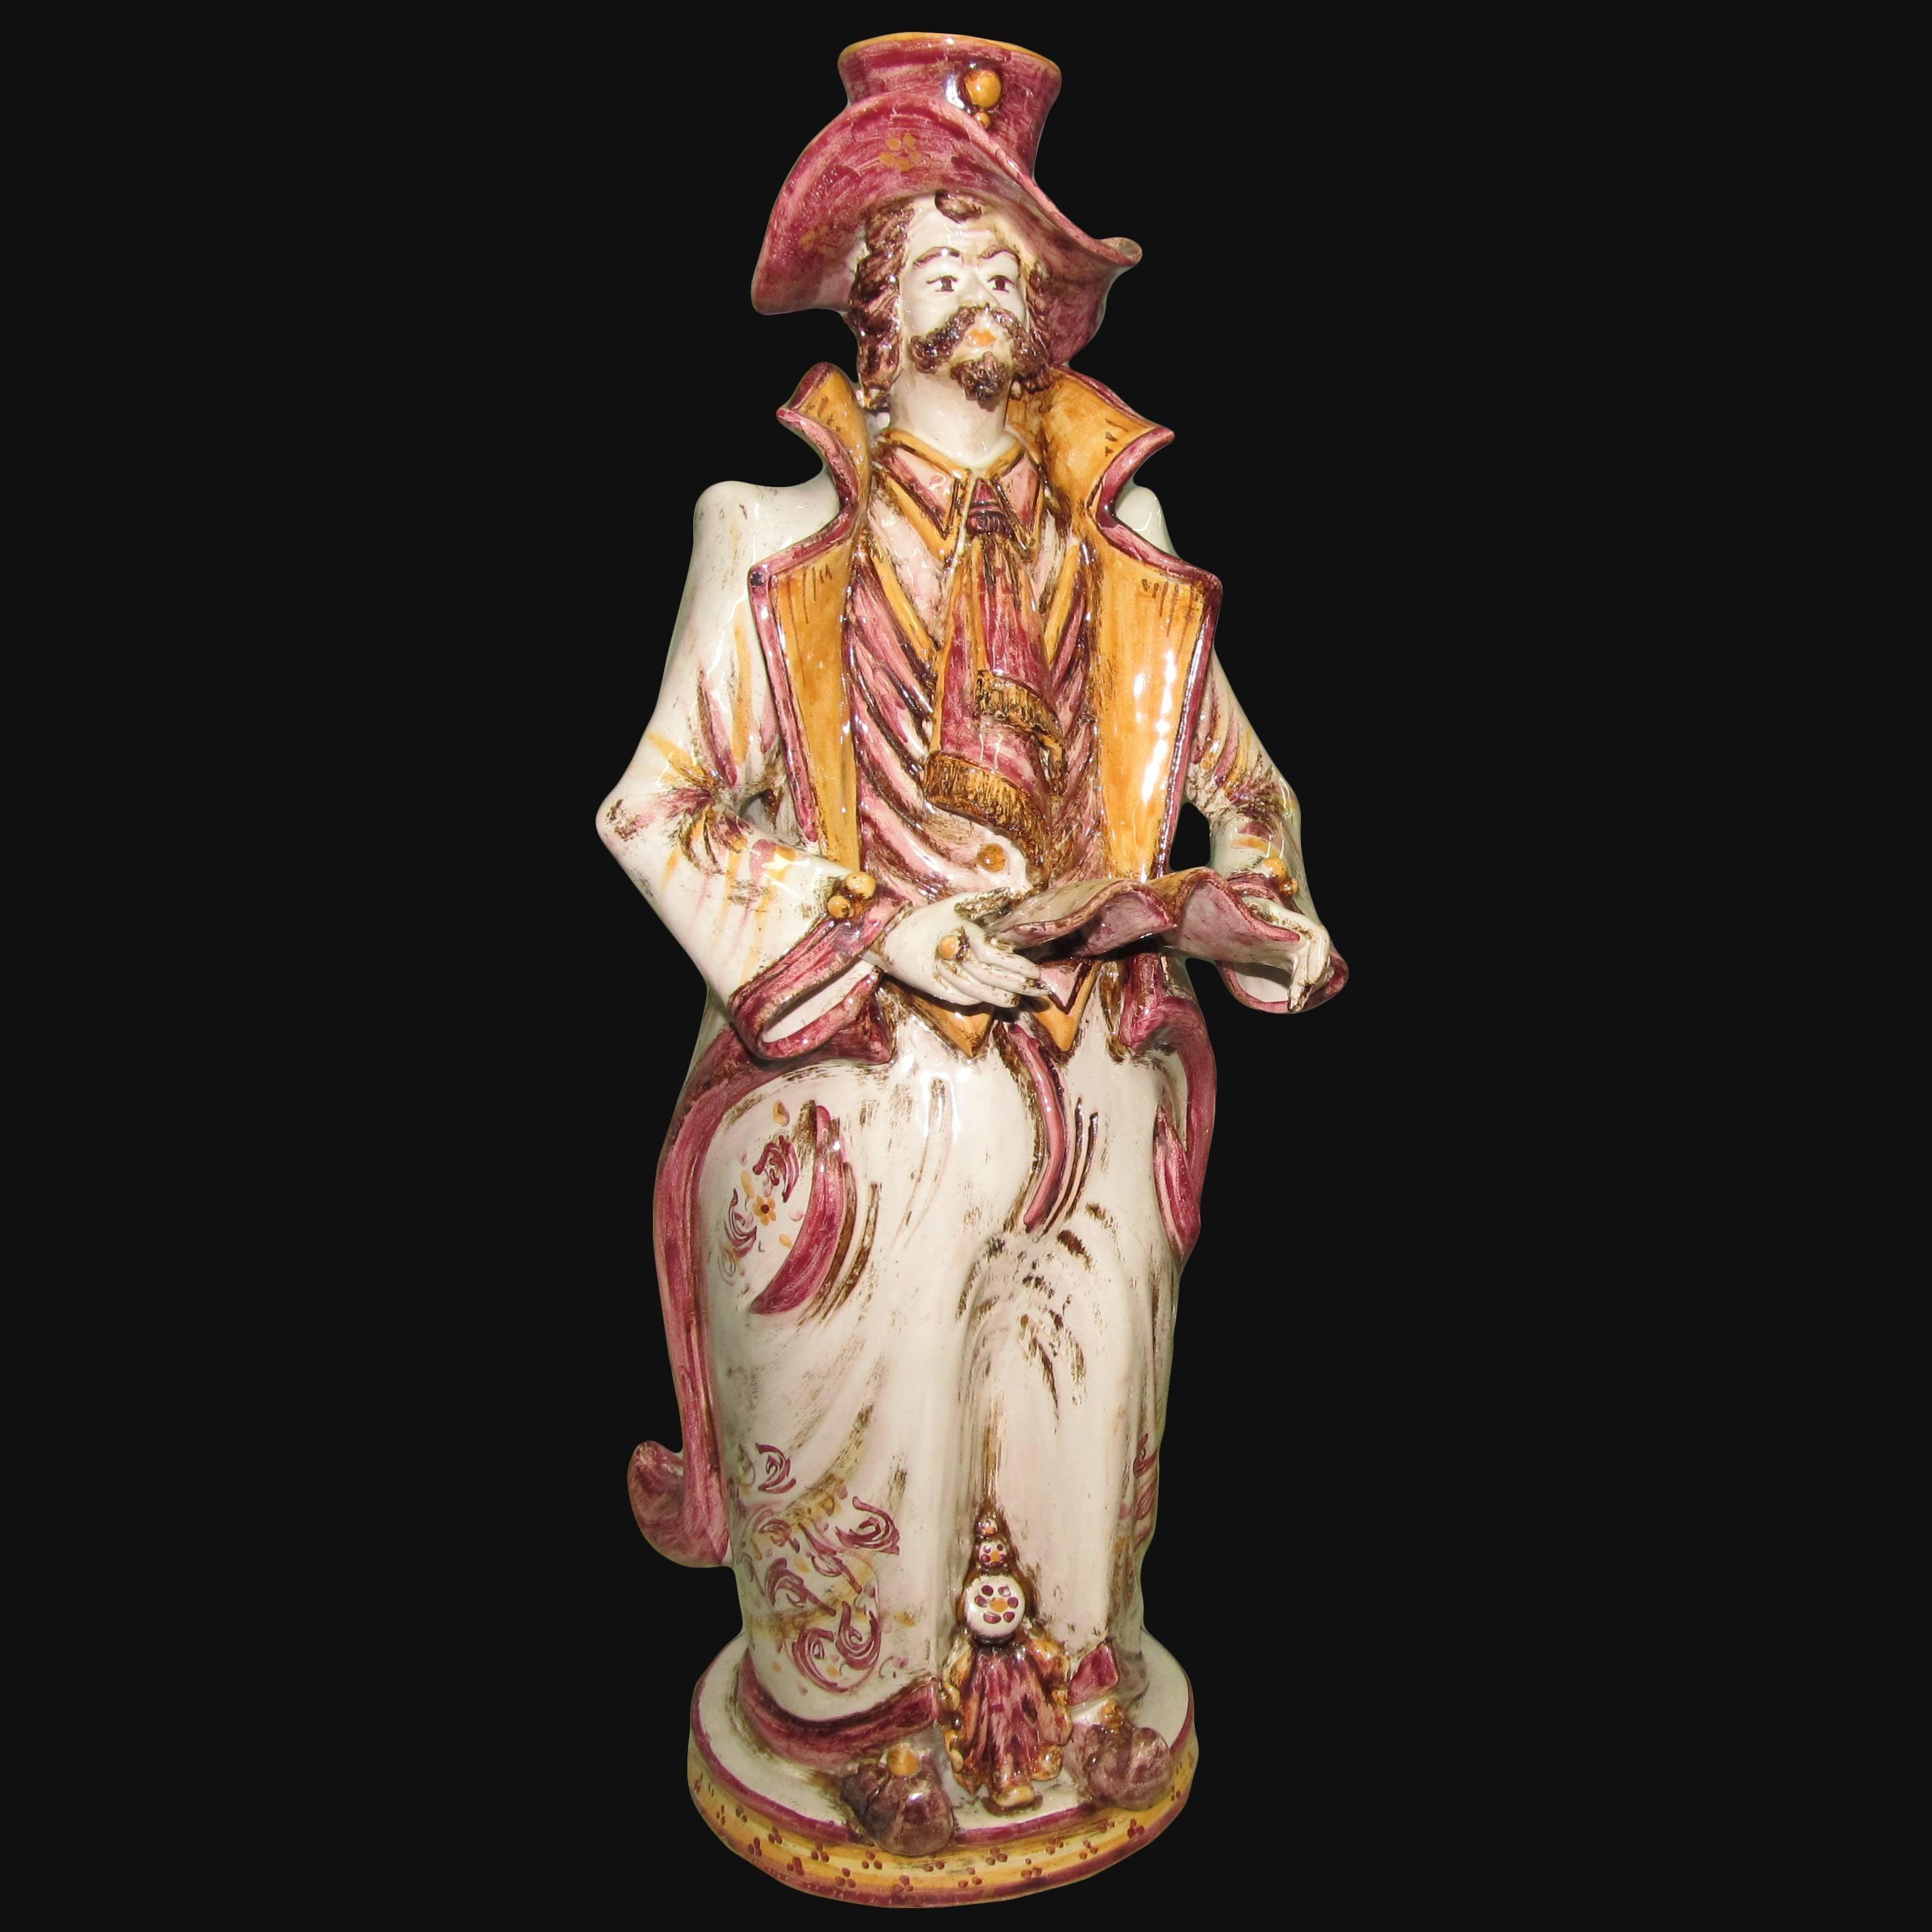 Lumiera grande uomo h 40 in bordeaux/arancio - Modellate a mano - Ceramiche di Caltagirone Sofia